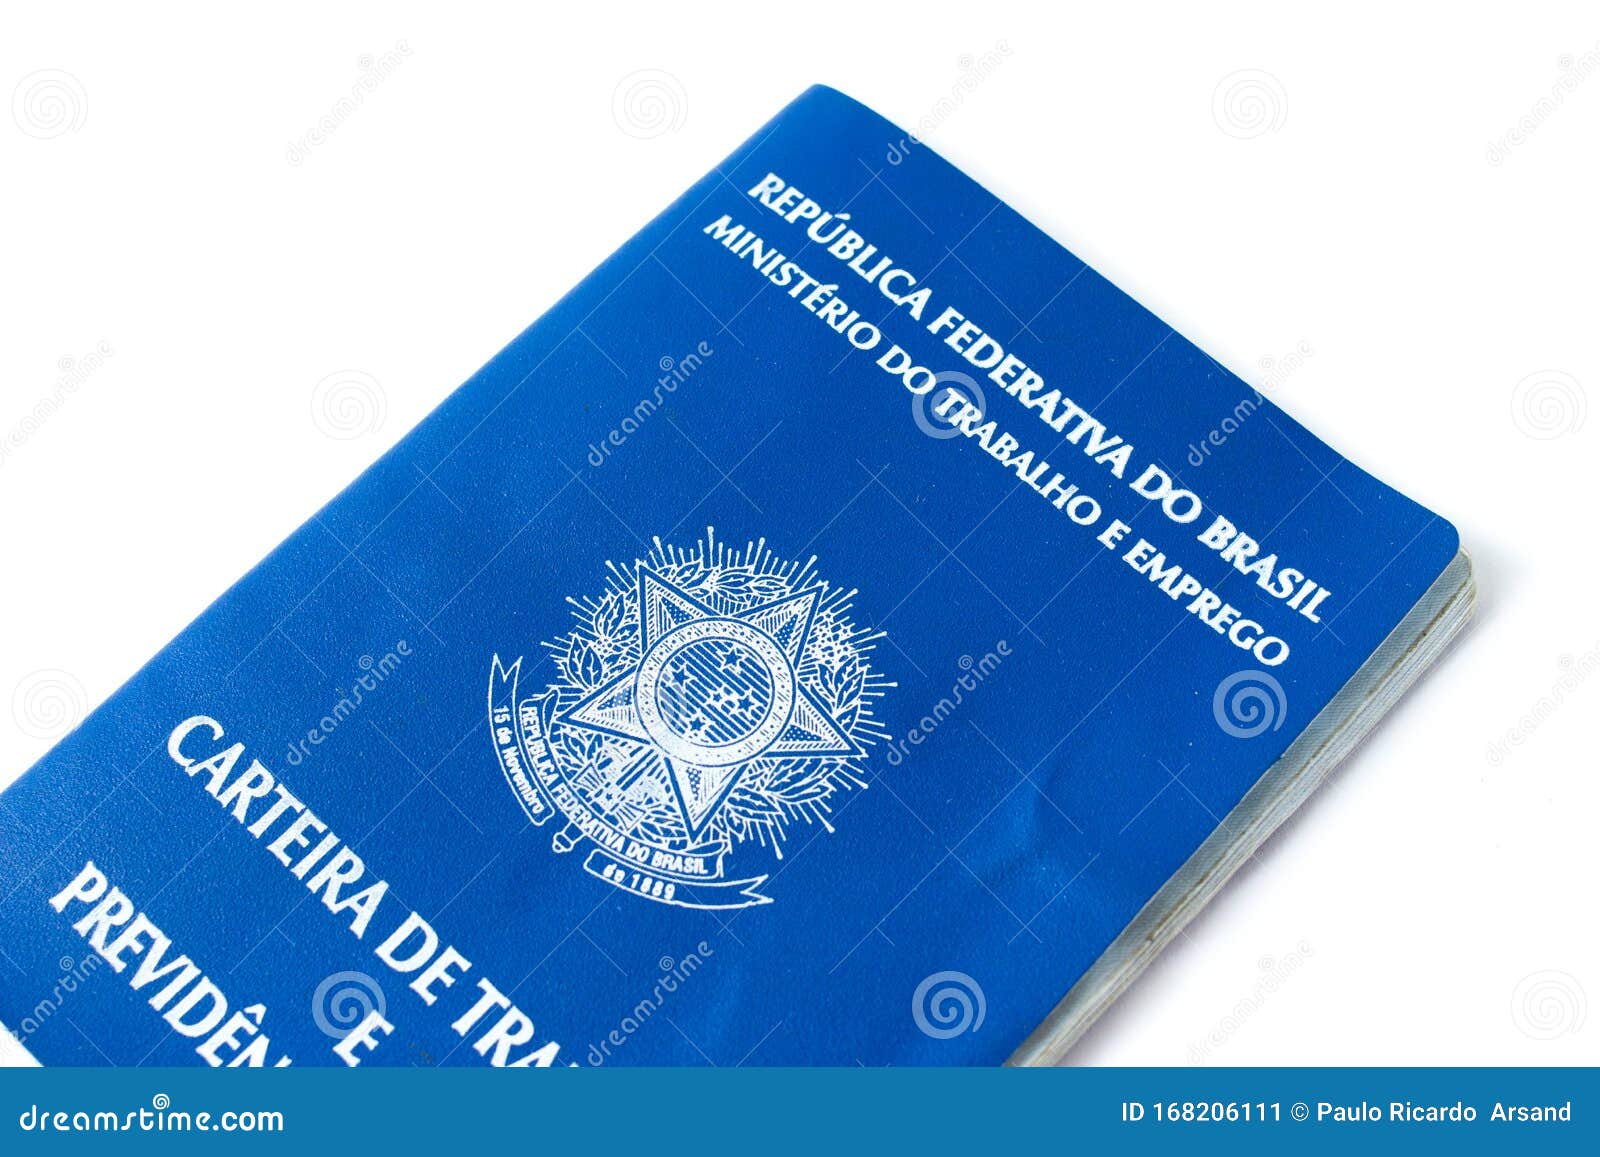 carteira de trabalho brasileira, inss, fgts. brazilian security identification. previdencia privada.